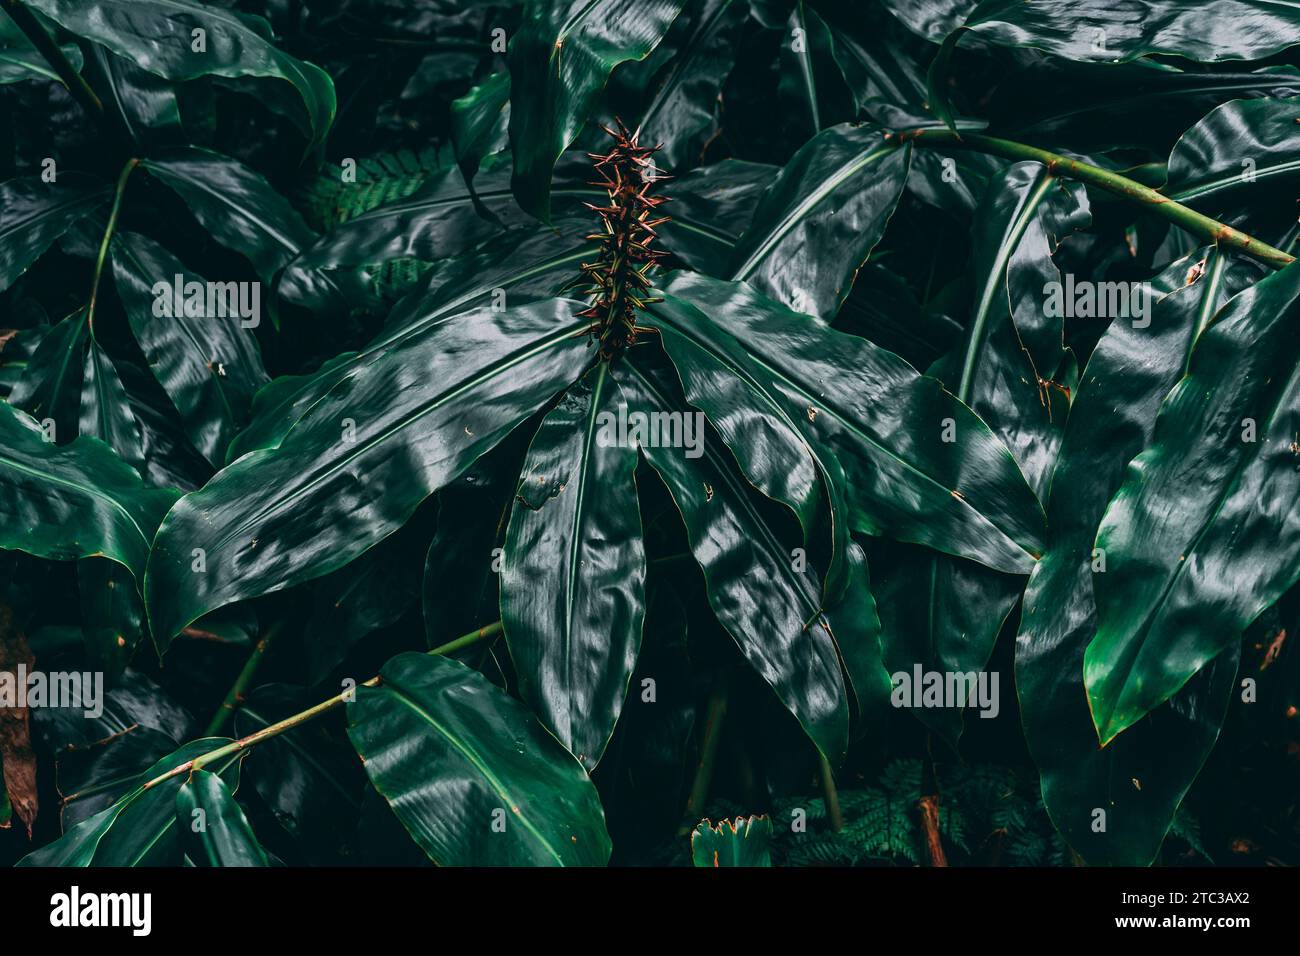 Üppig und fesselnd: Eine dunkelgrüne Pflanze zeigt ein atemberaubendes Muster und schafft eine visuell bezaubernde Komposition voller Vitalität. Stockfoto